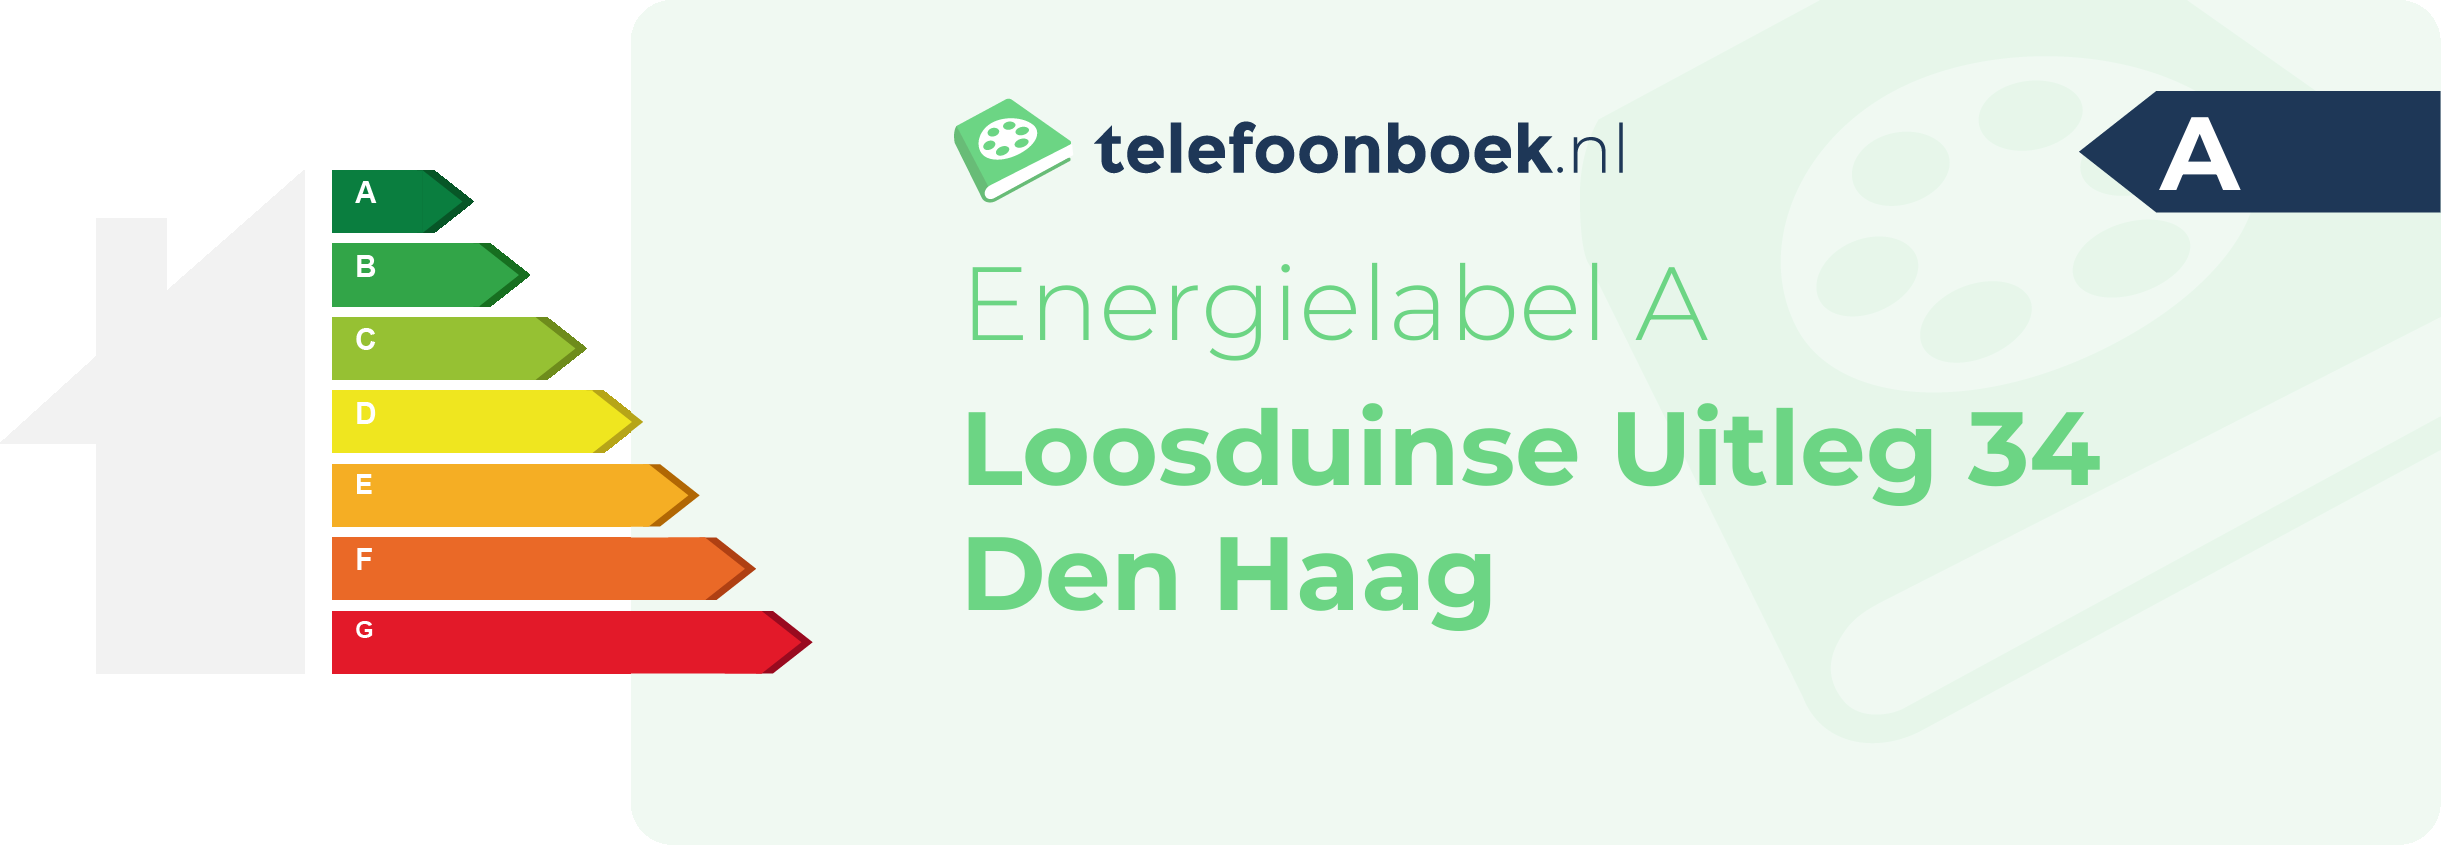 Energielabel Loosduinse Uitleg 34 Den Haag